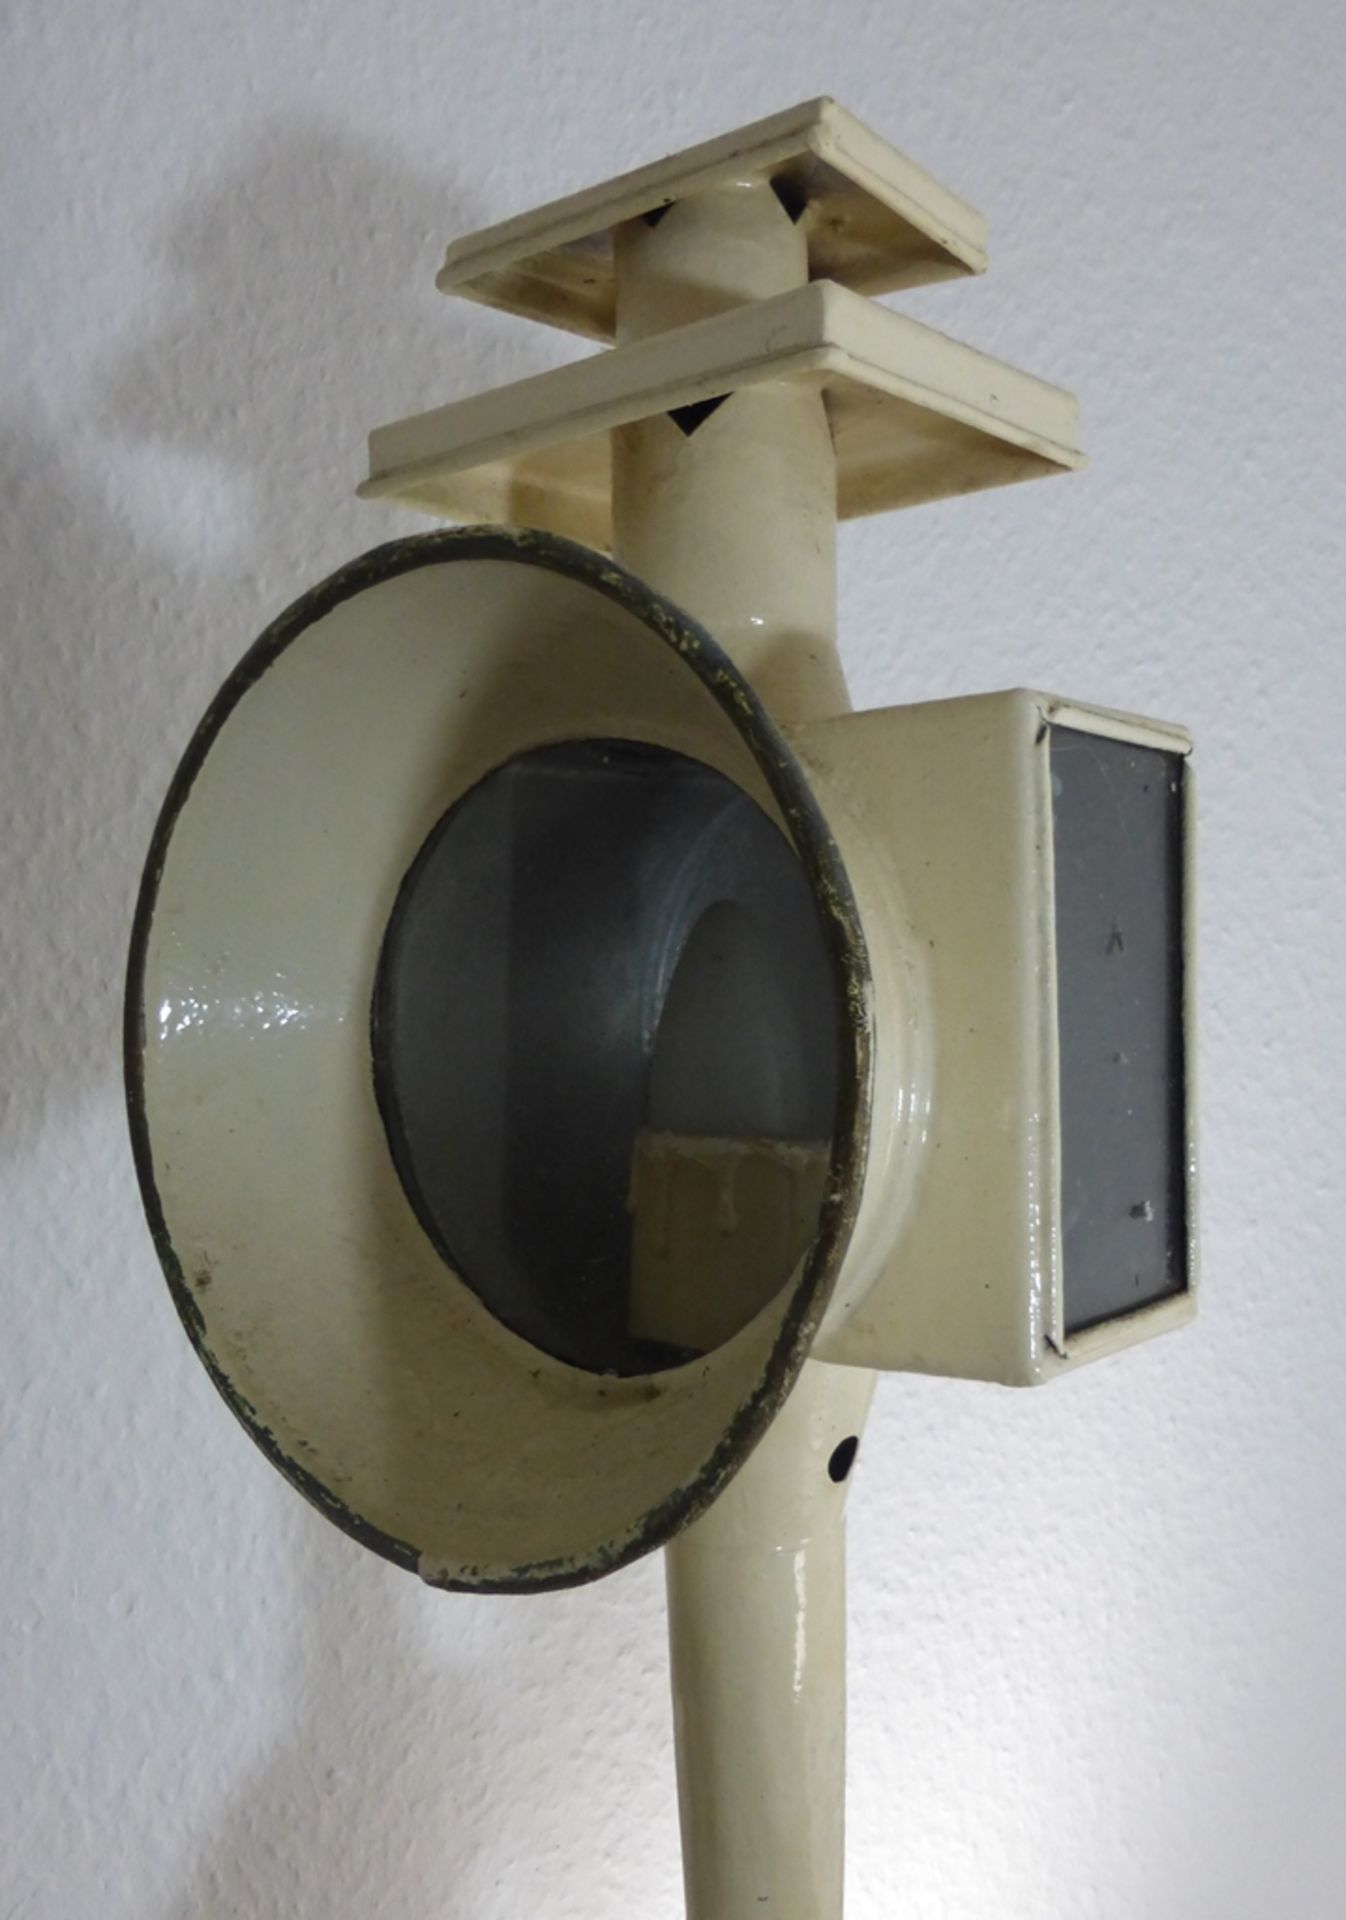 Kutscherlampe, Metall, weiß gefasst, zwei Seiten verglast, h. 50cm, 19. Jh., nachträglich